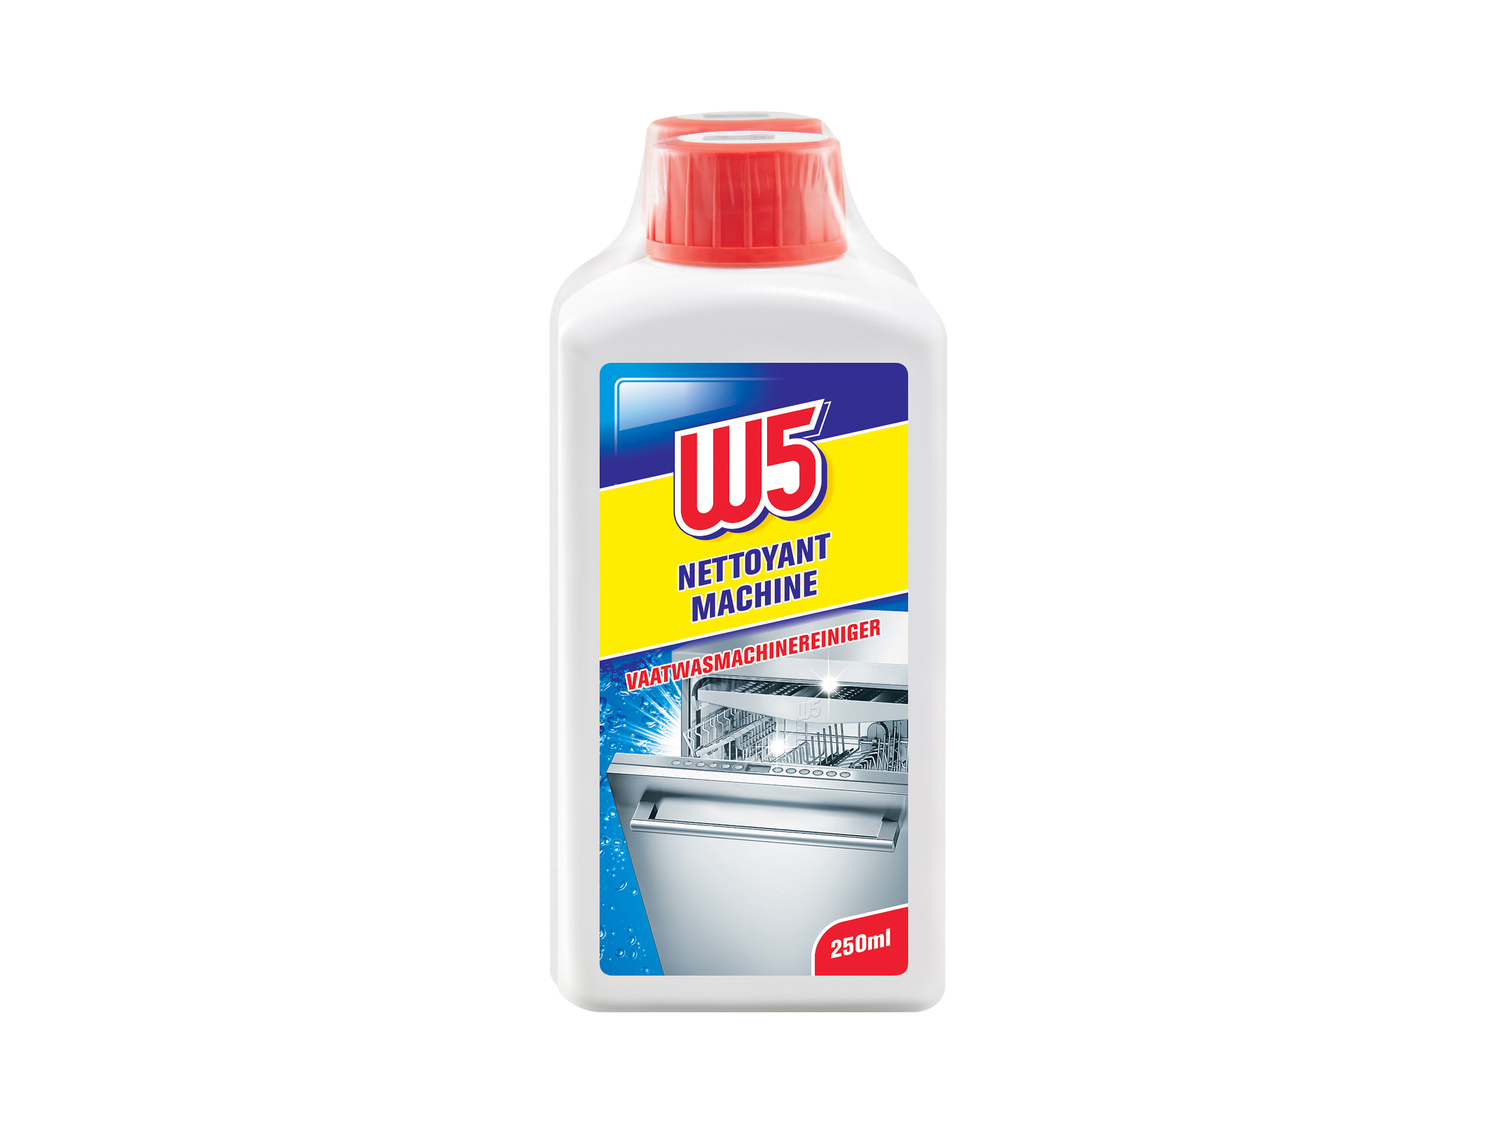 Nettoyant liquide1 , le prix 1.99 €  
-  Au choix: pour lave-linge ou lave-vaiselle